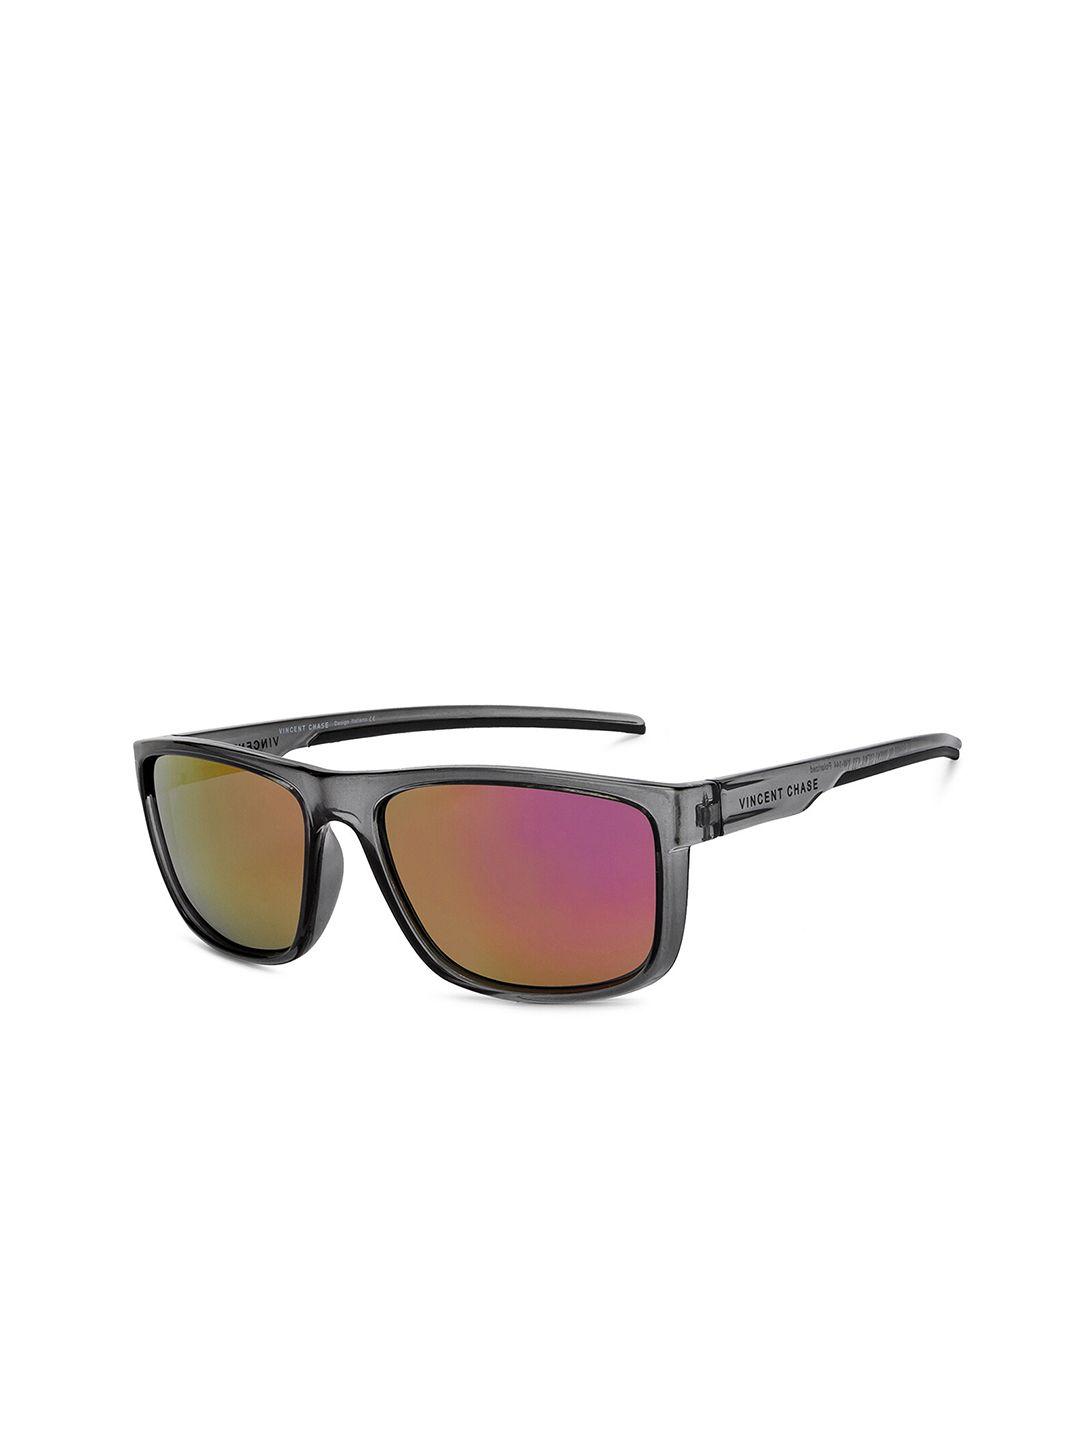 vincent chase unisex pink lens & gunmetal-toned wayfarer sunglasses 200512-grey